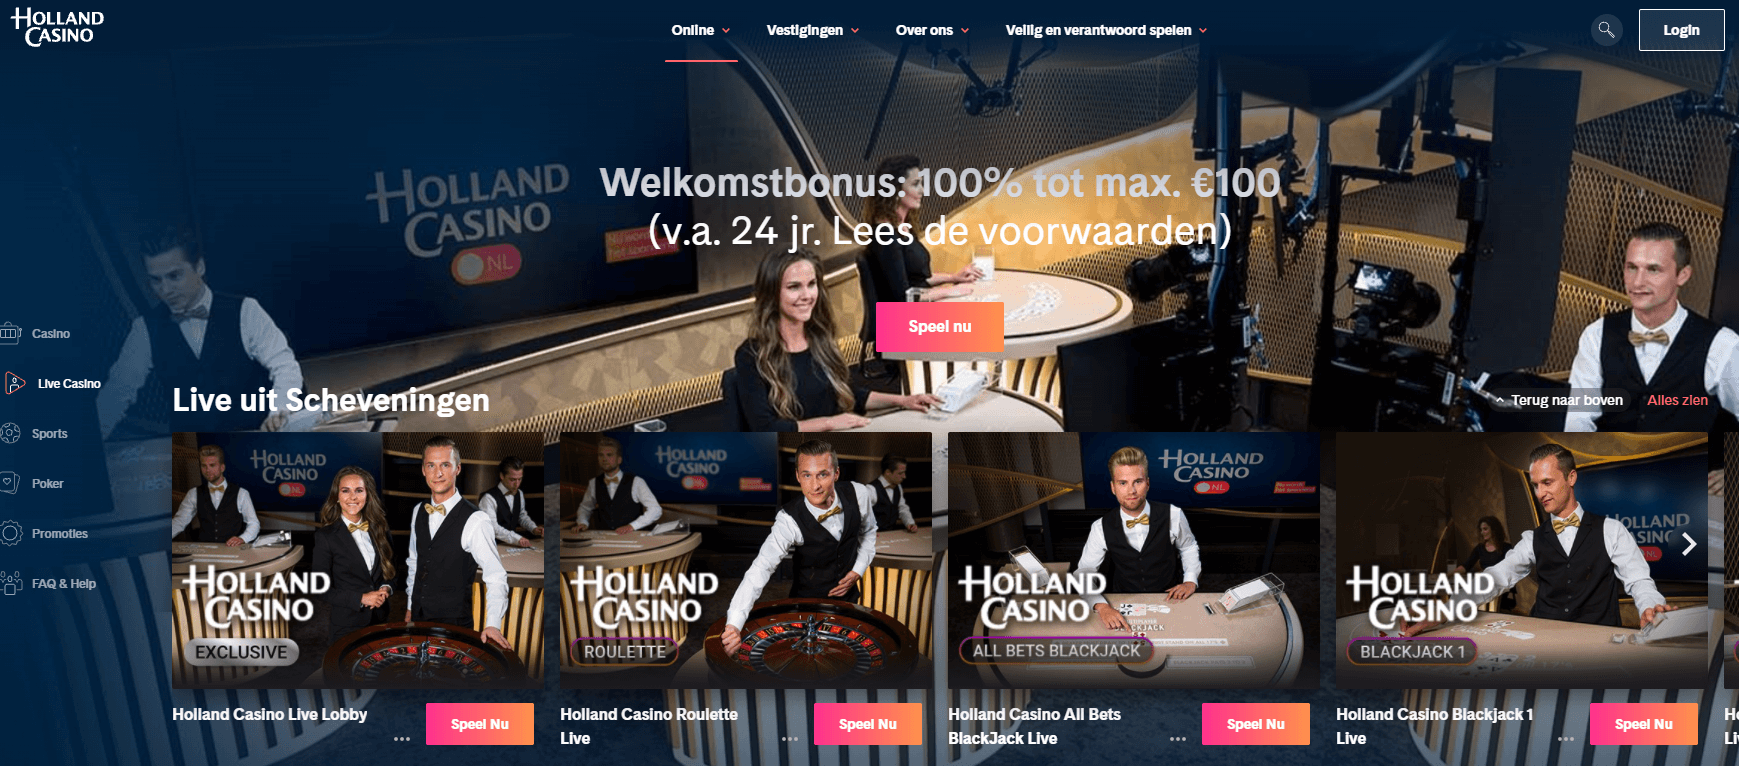 Holland casino homepagina